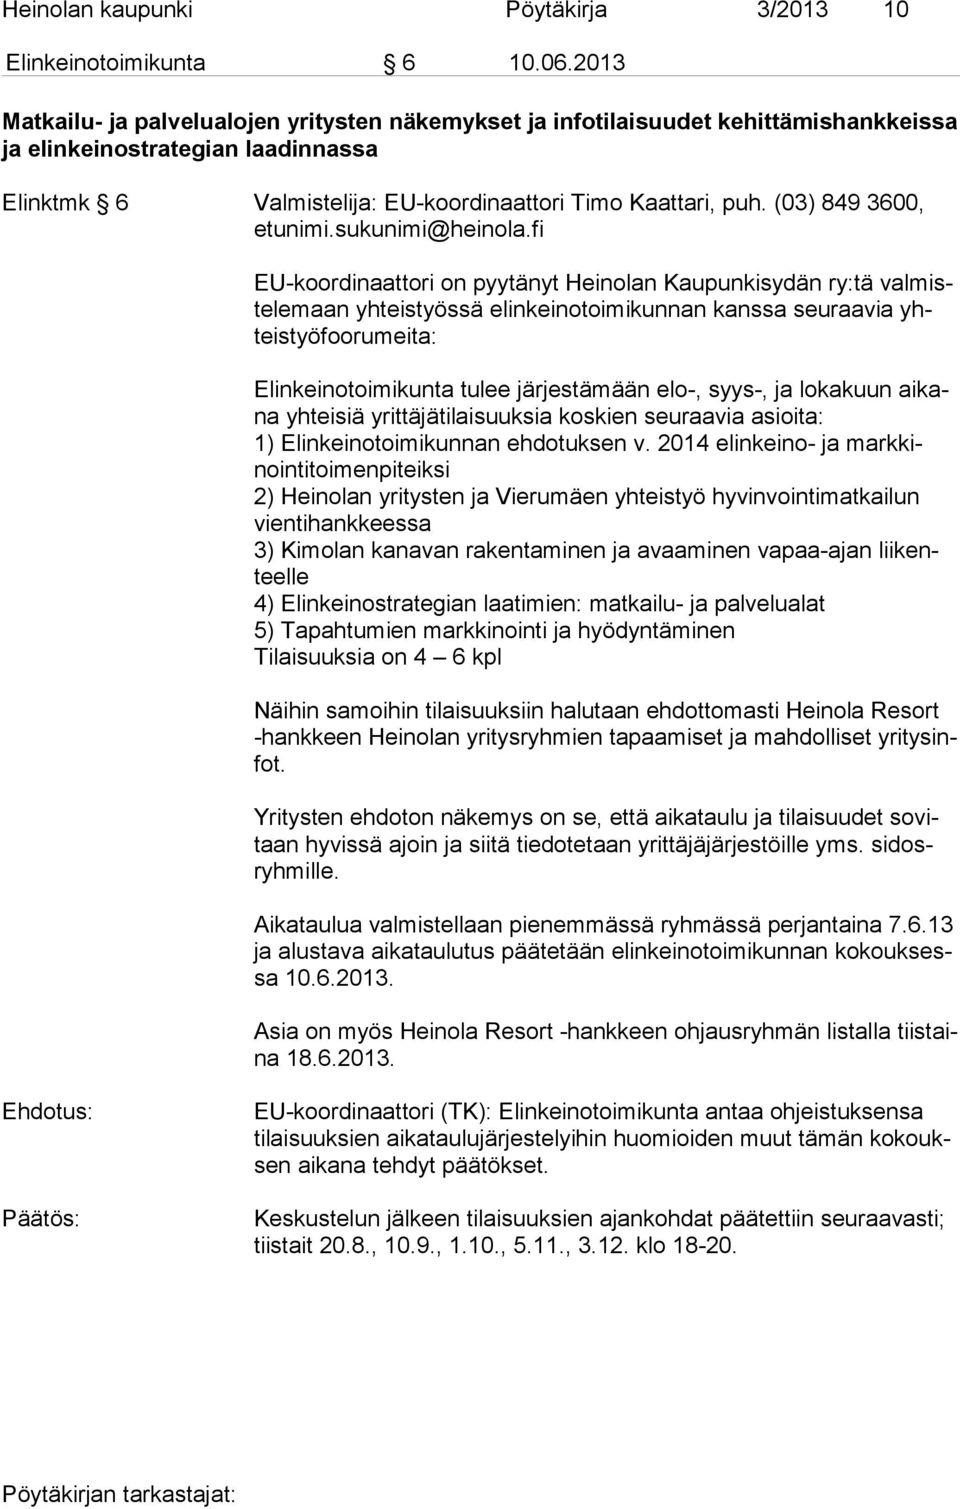 (03) 849 3600, EU-koordinaattori on pyytänyt Heinolan Kaupunkisydän ry:tä val miste le maan yhteistyössä elinkeinotoimikunnan kanssa seu raa via yhteis työ foo ru mei ta: Elinkeinotoimikunta tulee